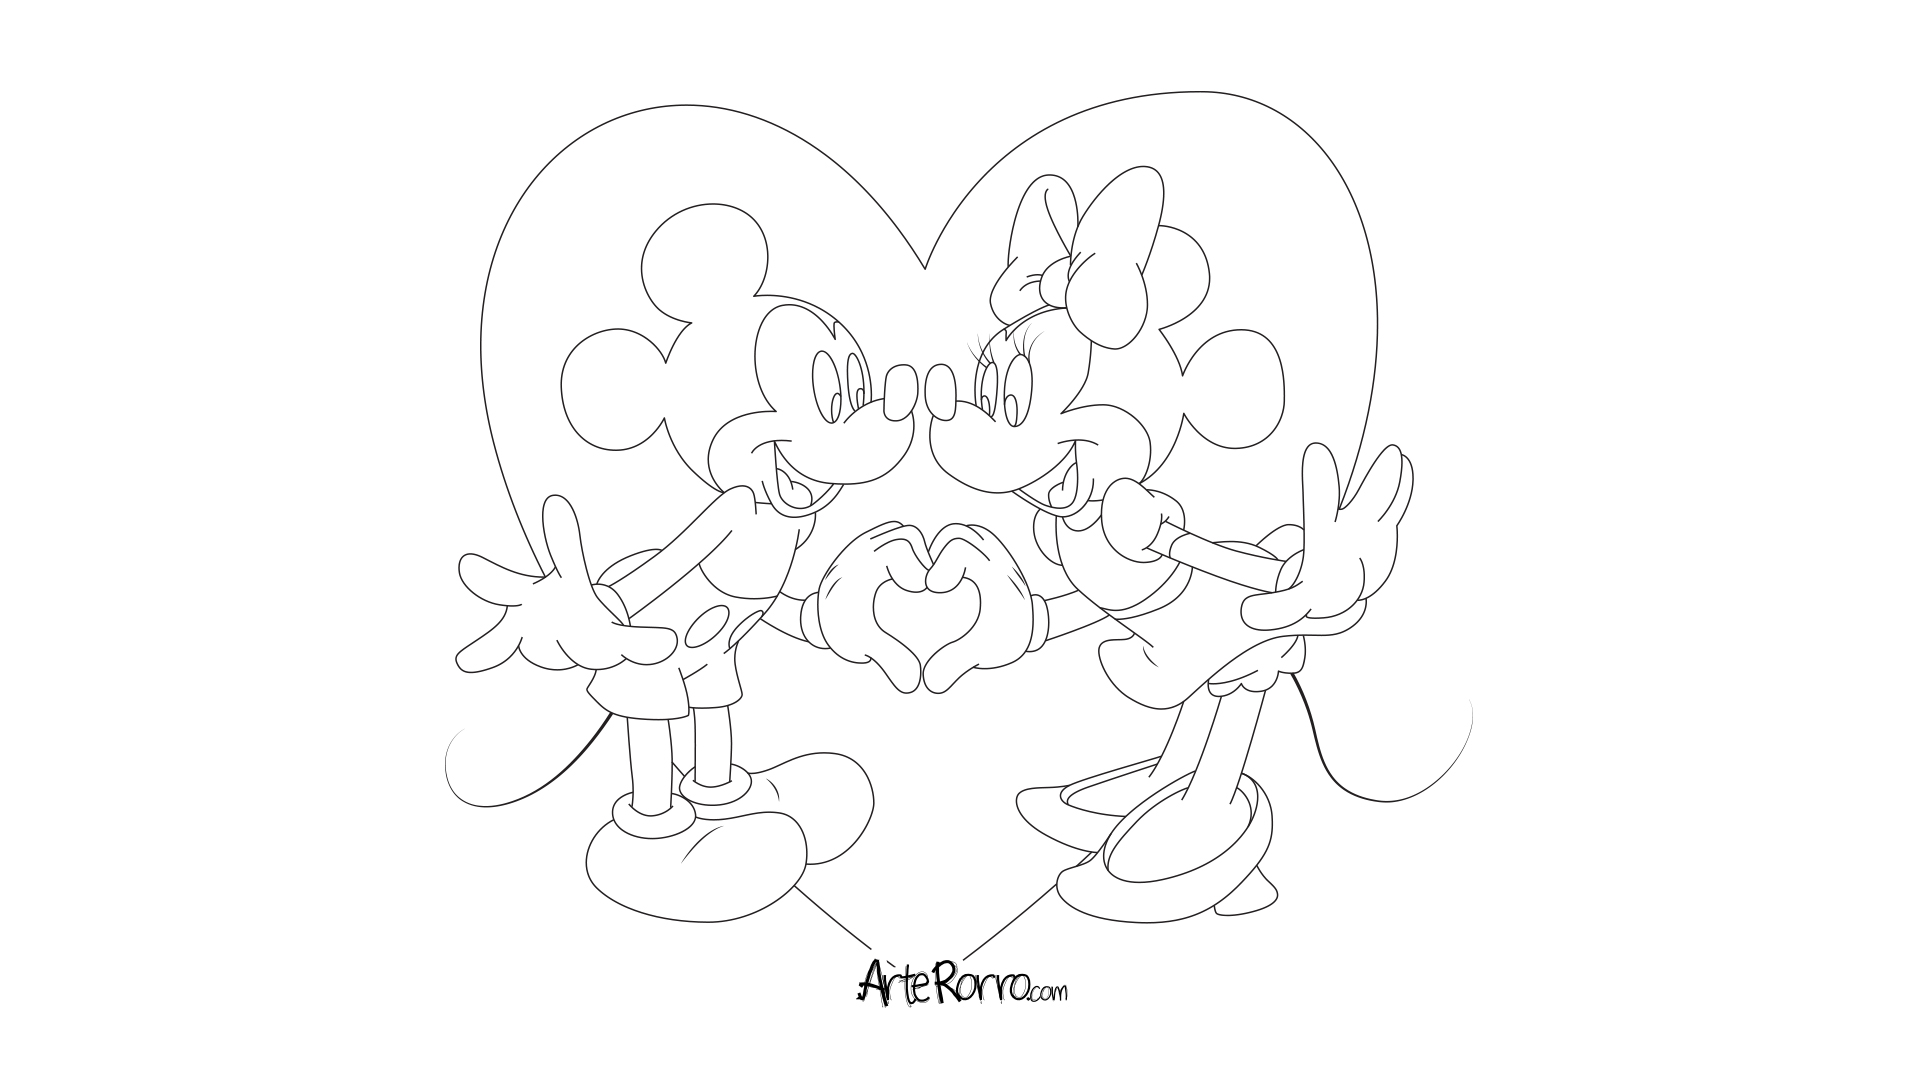 Micky & Minnie Mouse · Arte Rorro